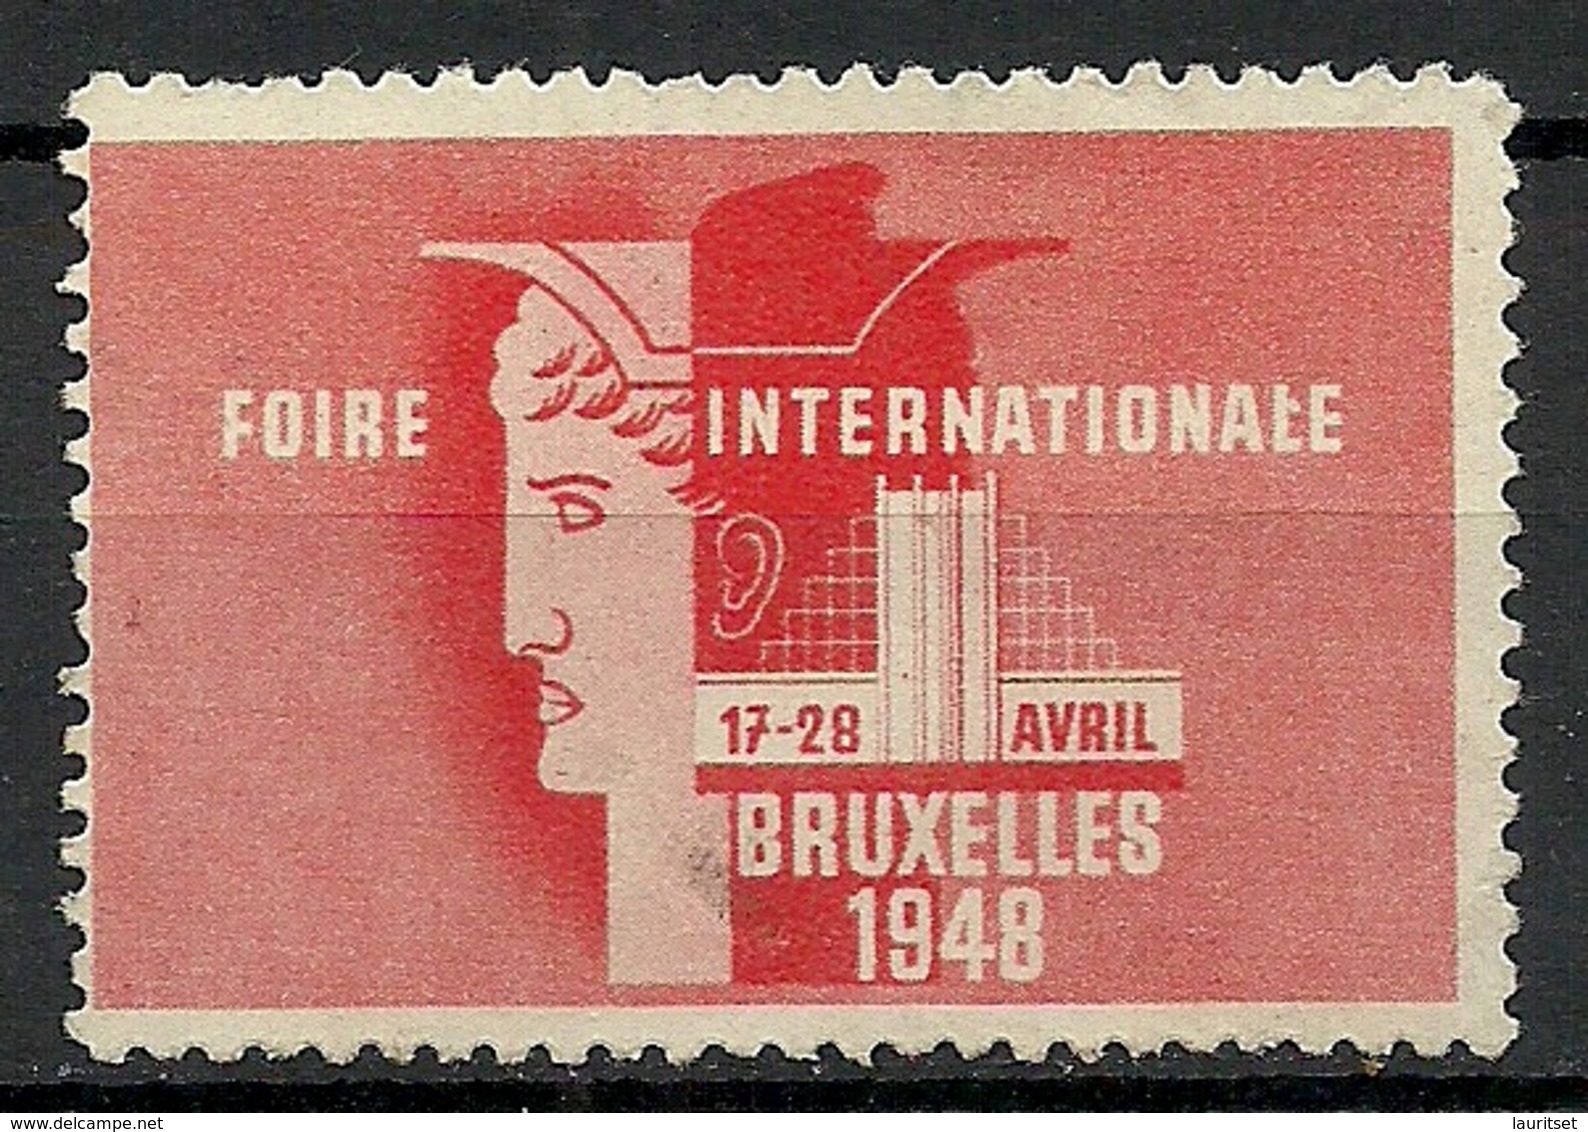 Belgium 1948 Foire Internationale Bruxelles Messe Fair (*) - Erinnofilia [E]